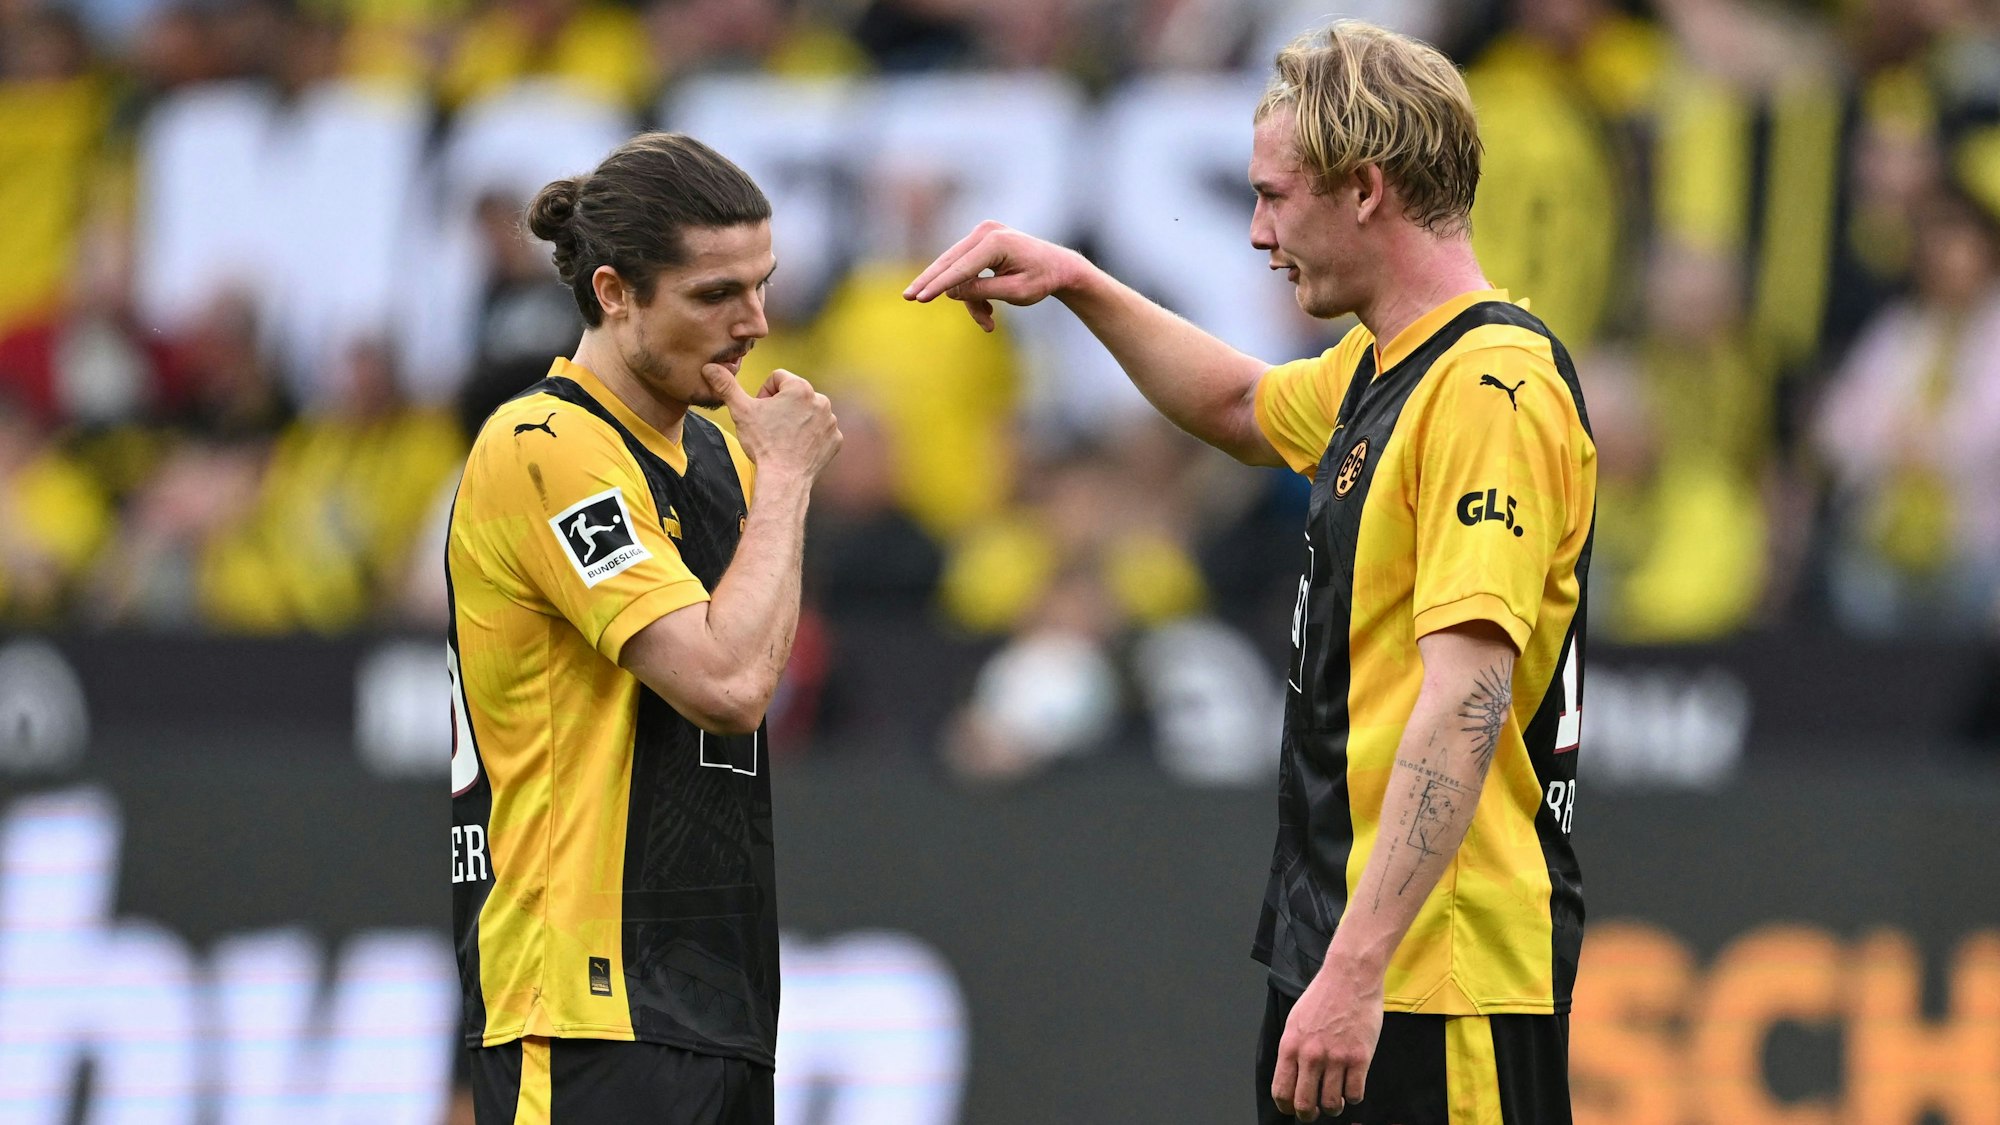 Ratlose Gesichter bei Marcel Sabitzer und Julian Brandt bei der Niederlage von Borussia Dortmund gegen den VfB Stuttgart.